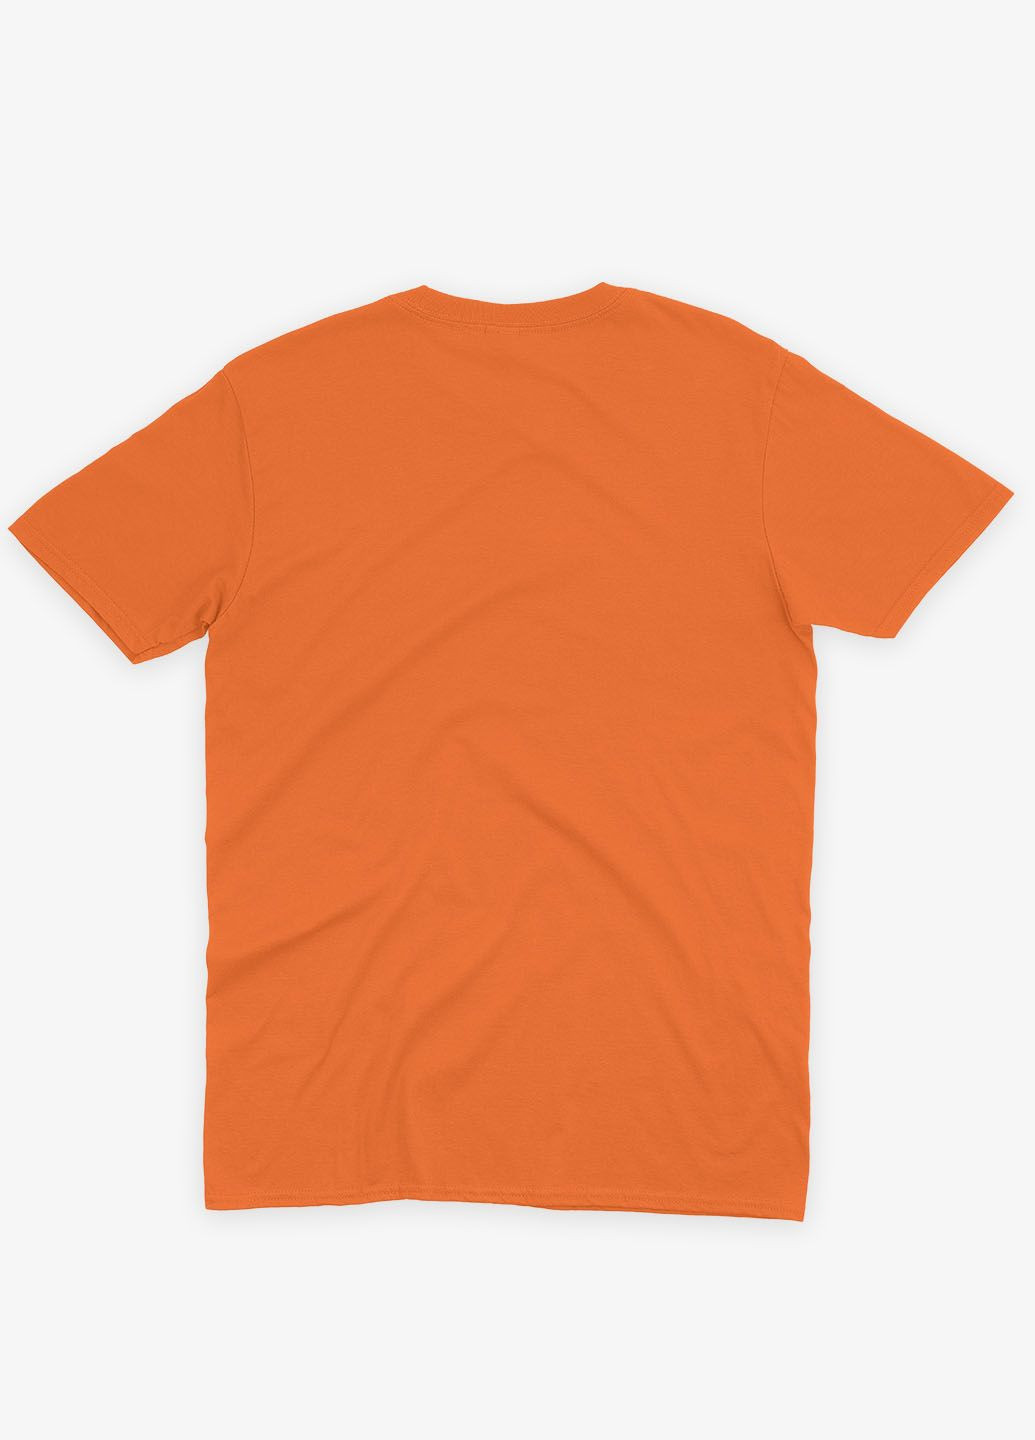 Оранжевая демисезонная футболка для девочки с принтом супергероя - человек-паук (ts001-1-ora-006-014-112-g) Modno